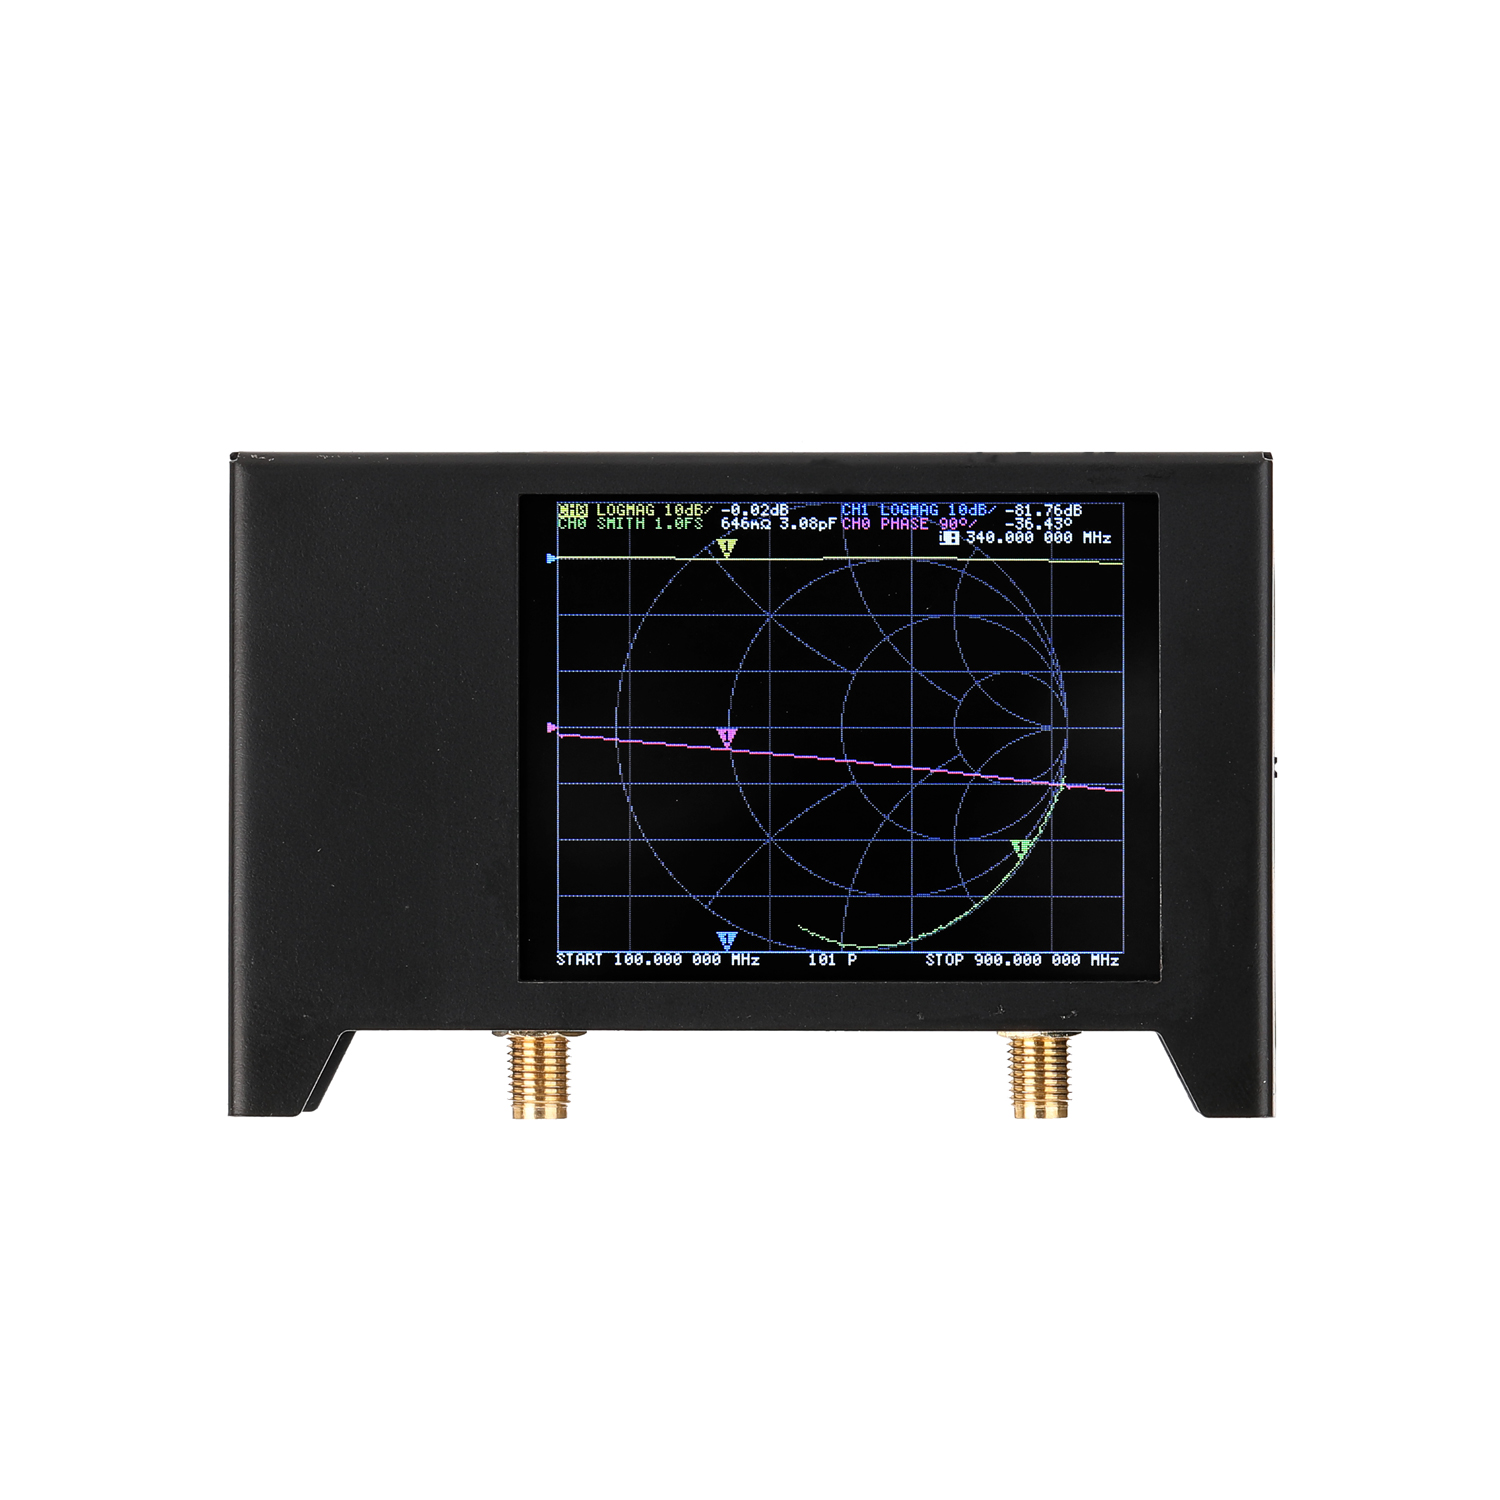 28-Inch-Screen-3G-50KHz-3GHz-Vector-Network-Analyzer-S-A-A-2-NanoVNA-V2-Antenna-Analyzer-Shortwave-H-1754279-8